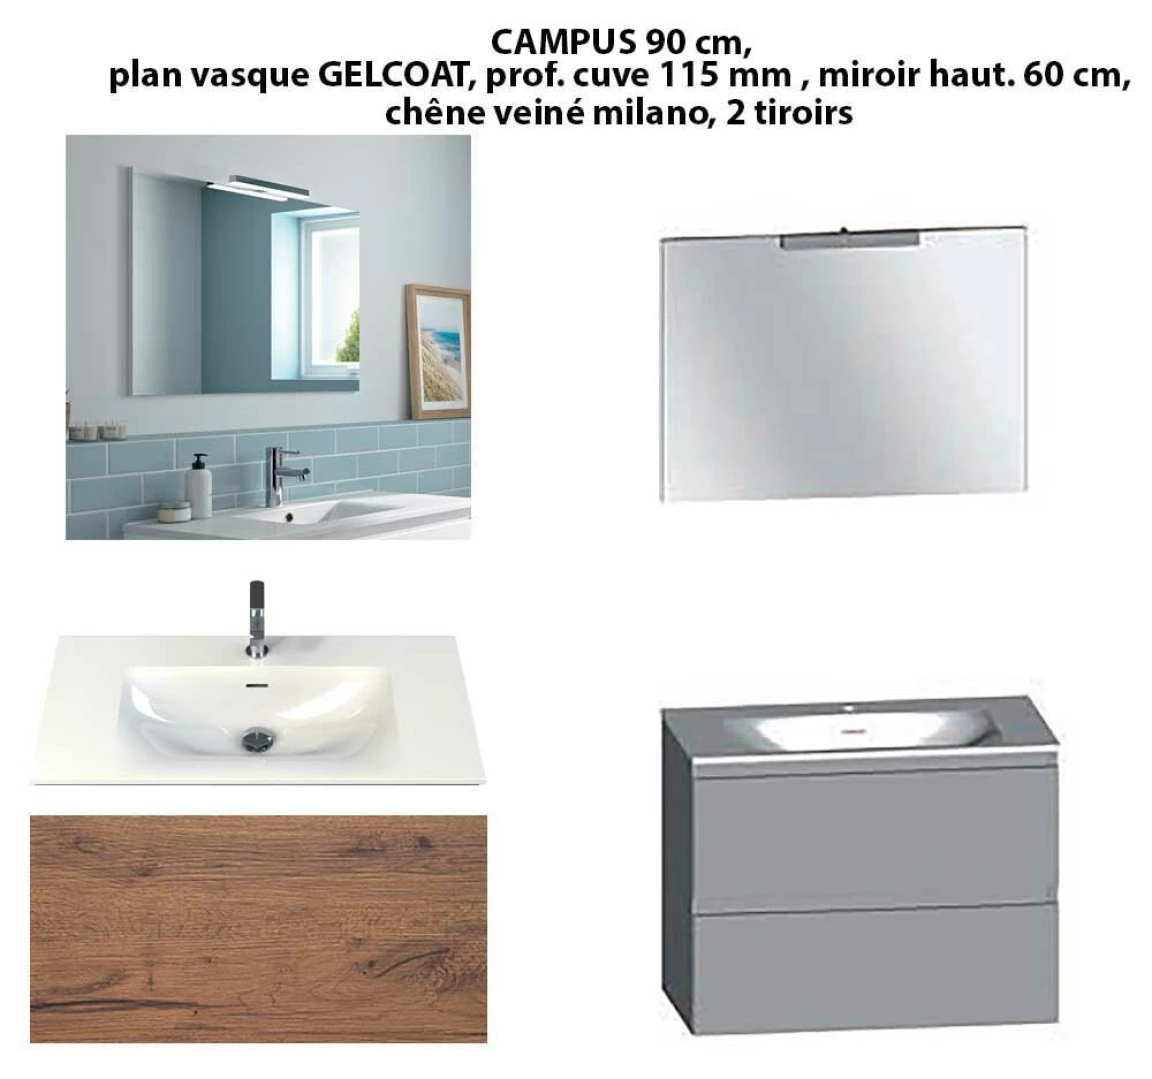 Ensemble meuble de salle de bain CAMPUS 90 cm, plan vasque GELCOAT, prof. cuve 115 mm, miroir hauteur 60 cm, chêne veiné milano, 2 tiroirs